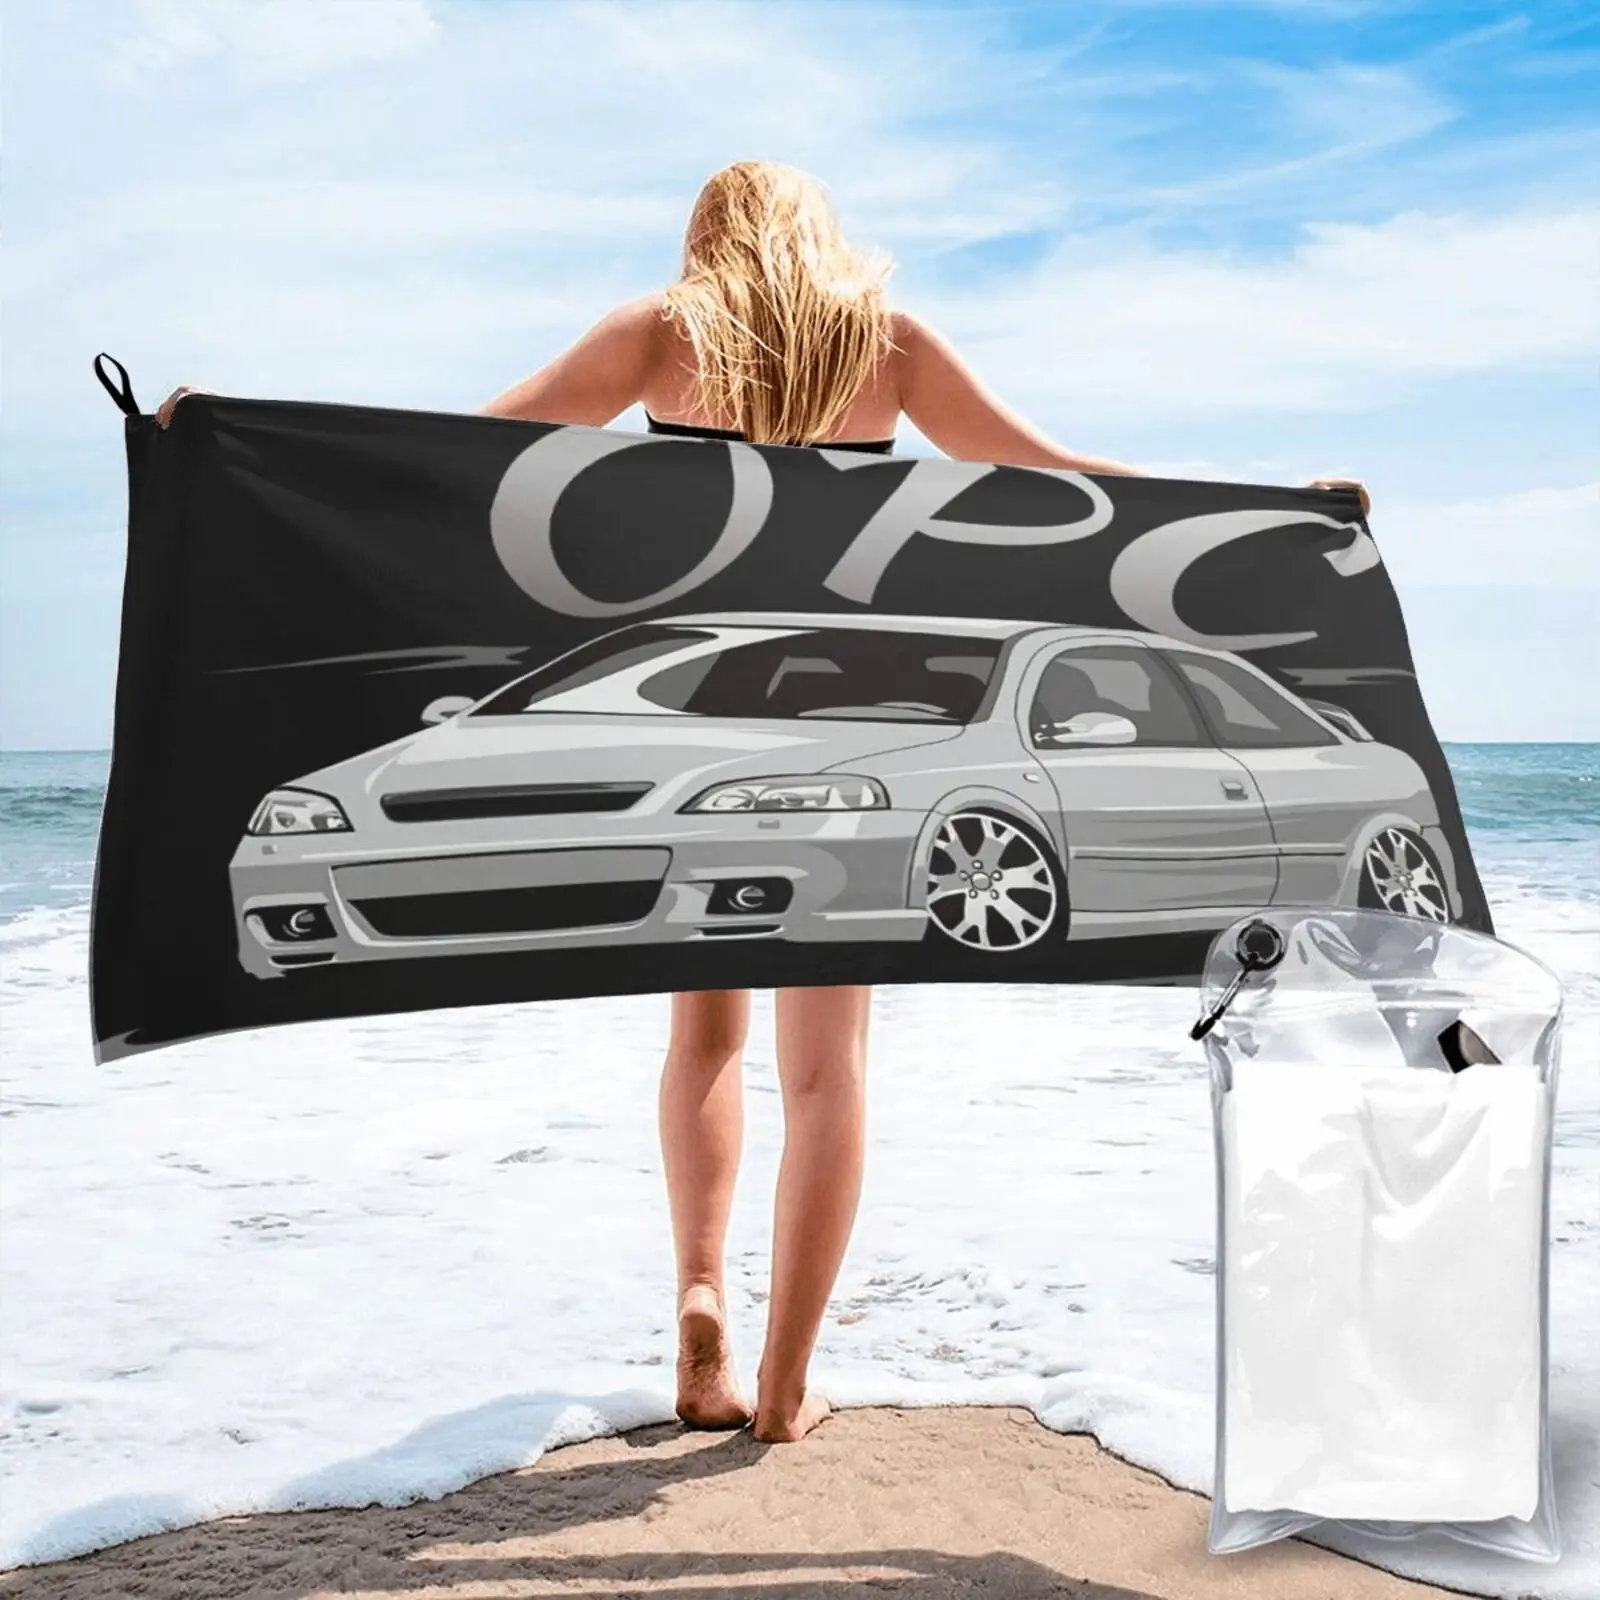 

Пляжное полотенце Opel Astra G Opc 1812, банный халат, женское банное полотенце для рук, пляжное одеяло, Большое пляжное полотенце для ванной